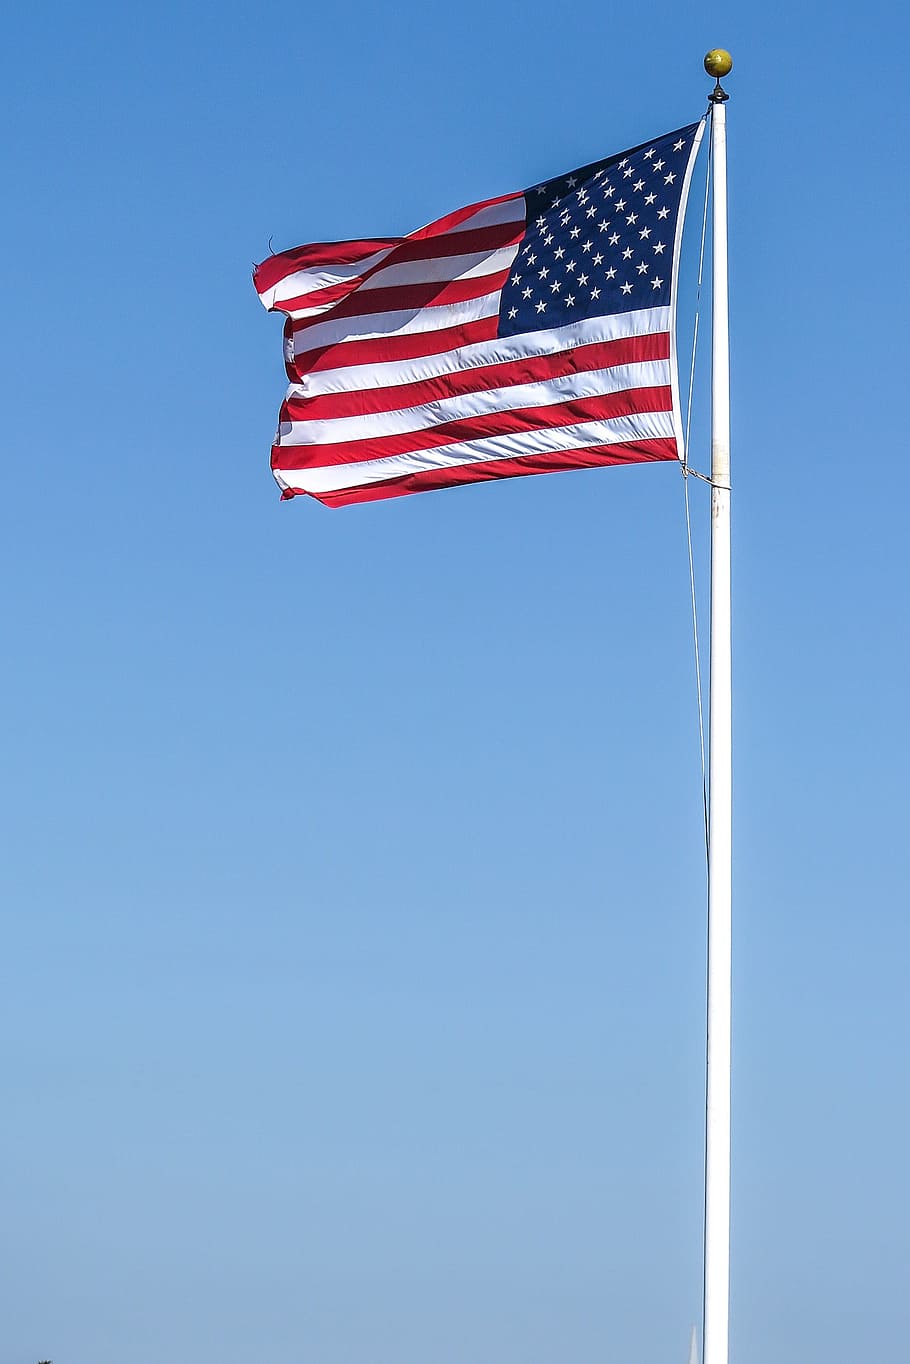 estrellas, rayas, completo, personal, ondeando, viento, américa, estadounidense, bandera estadounidense, bandera